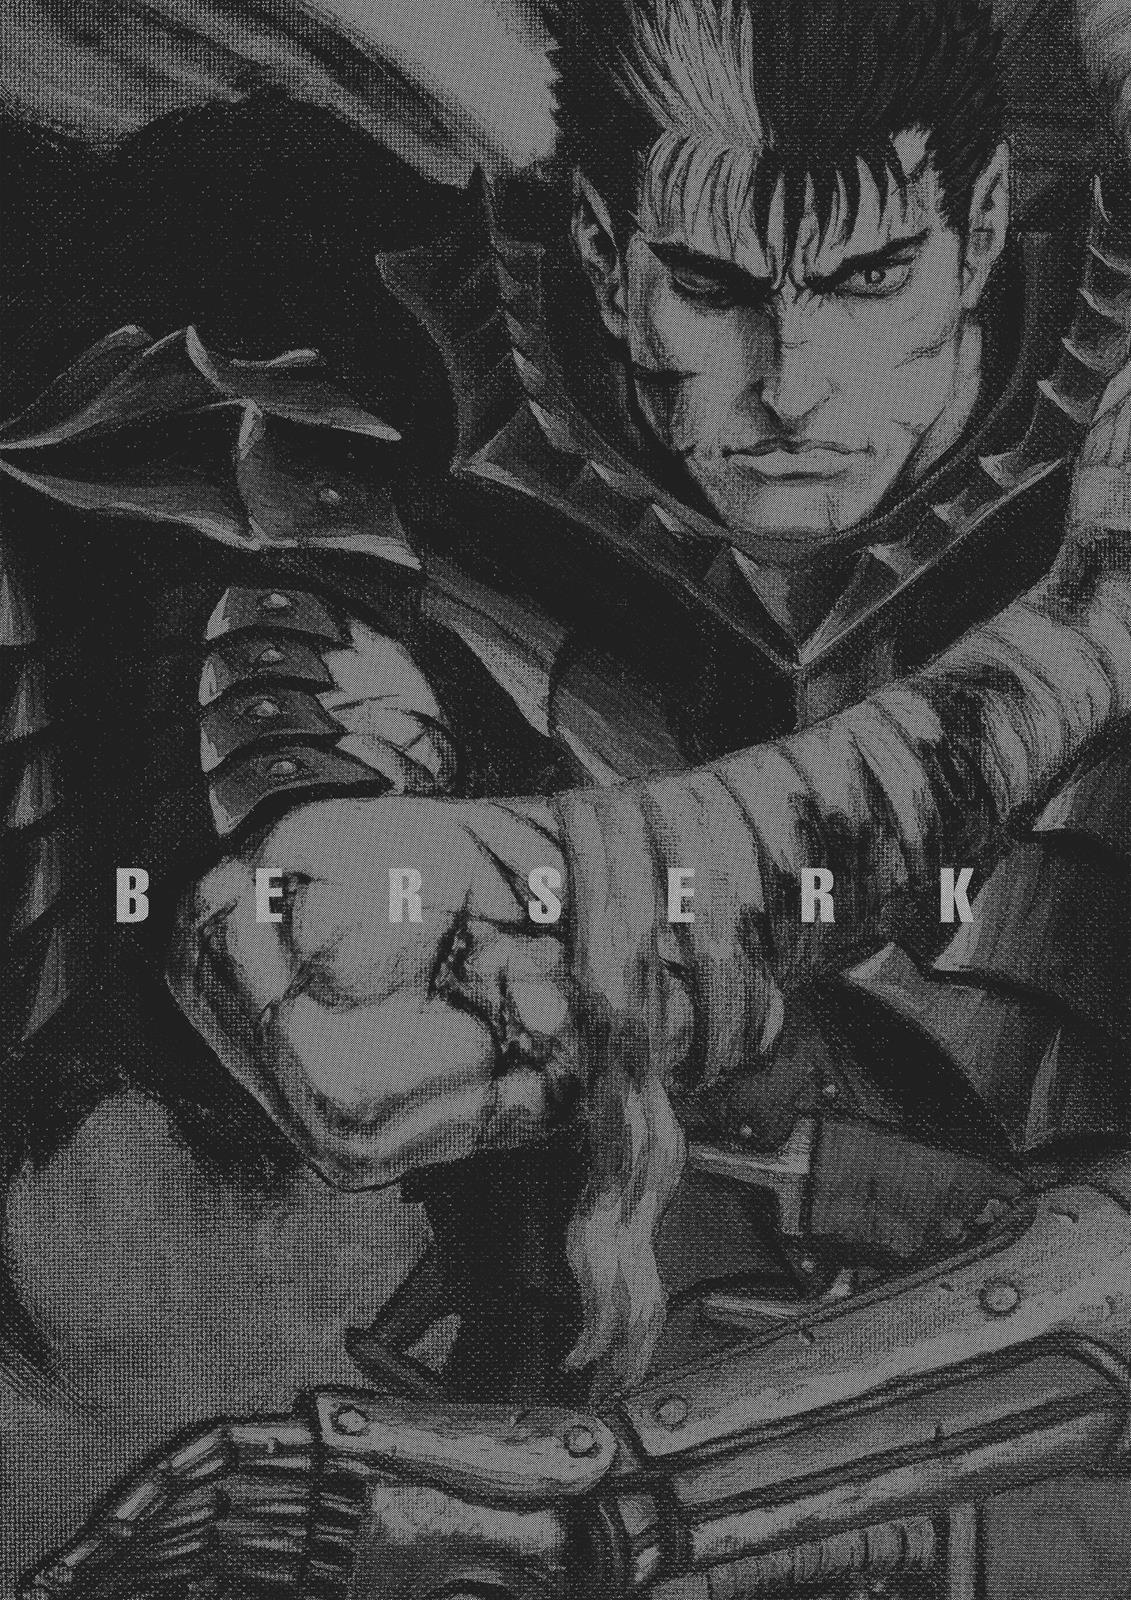 Berserk Manga Chapter 356 image 20